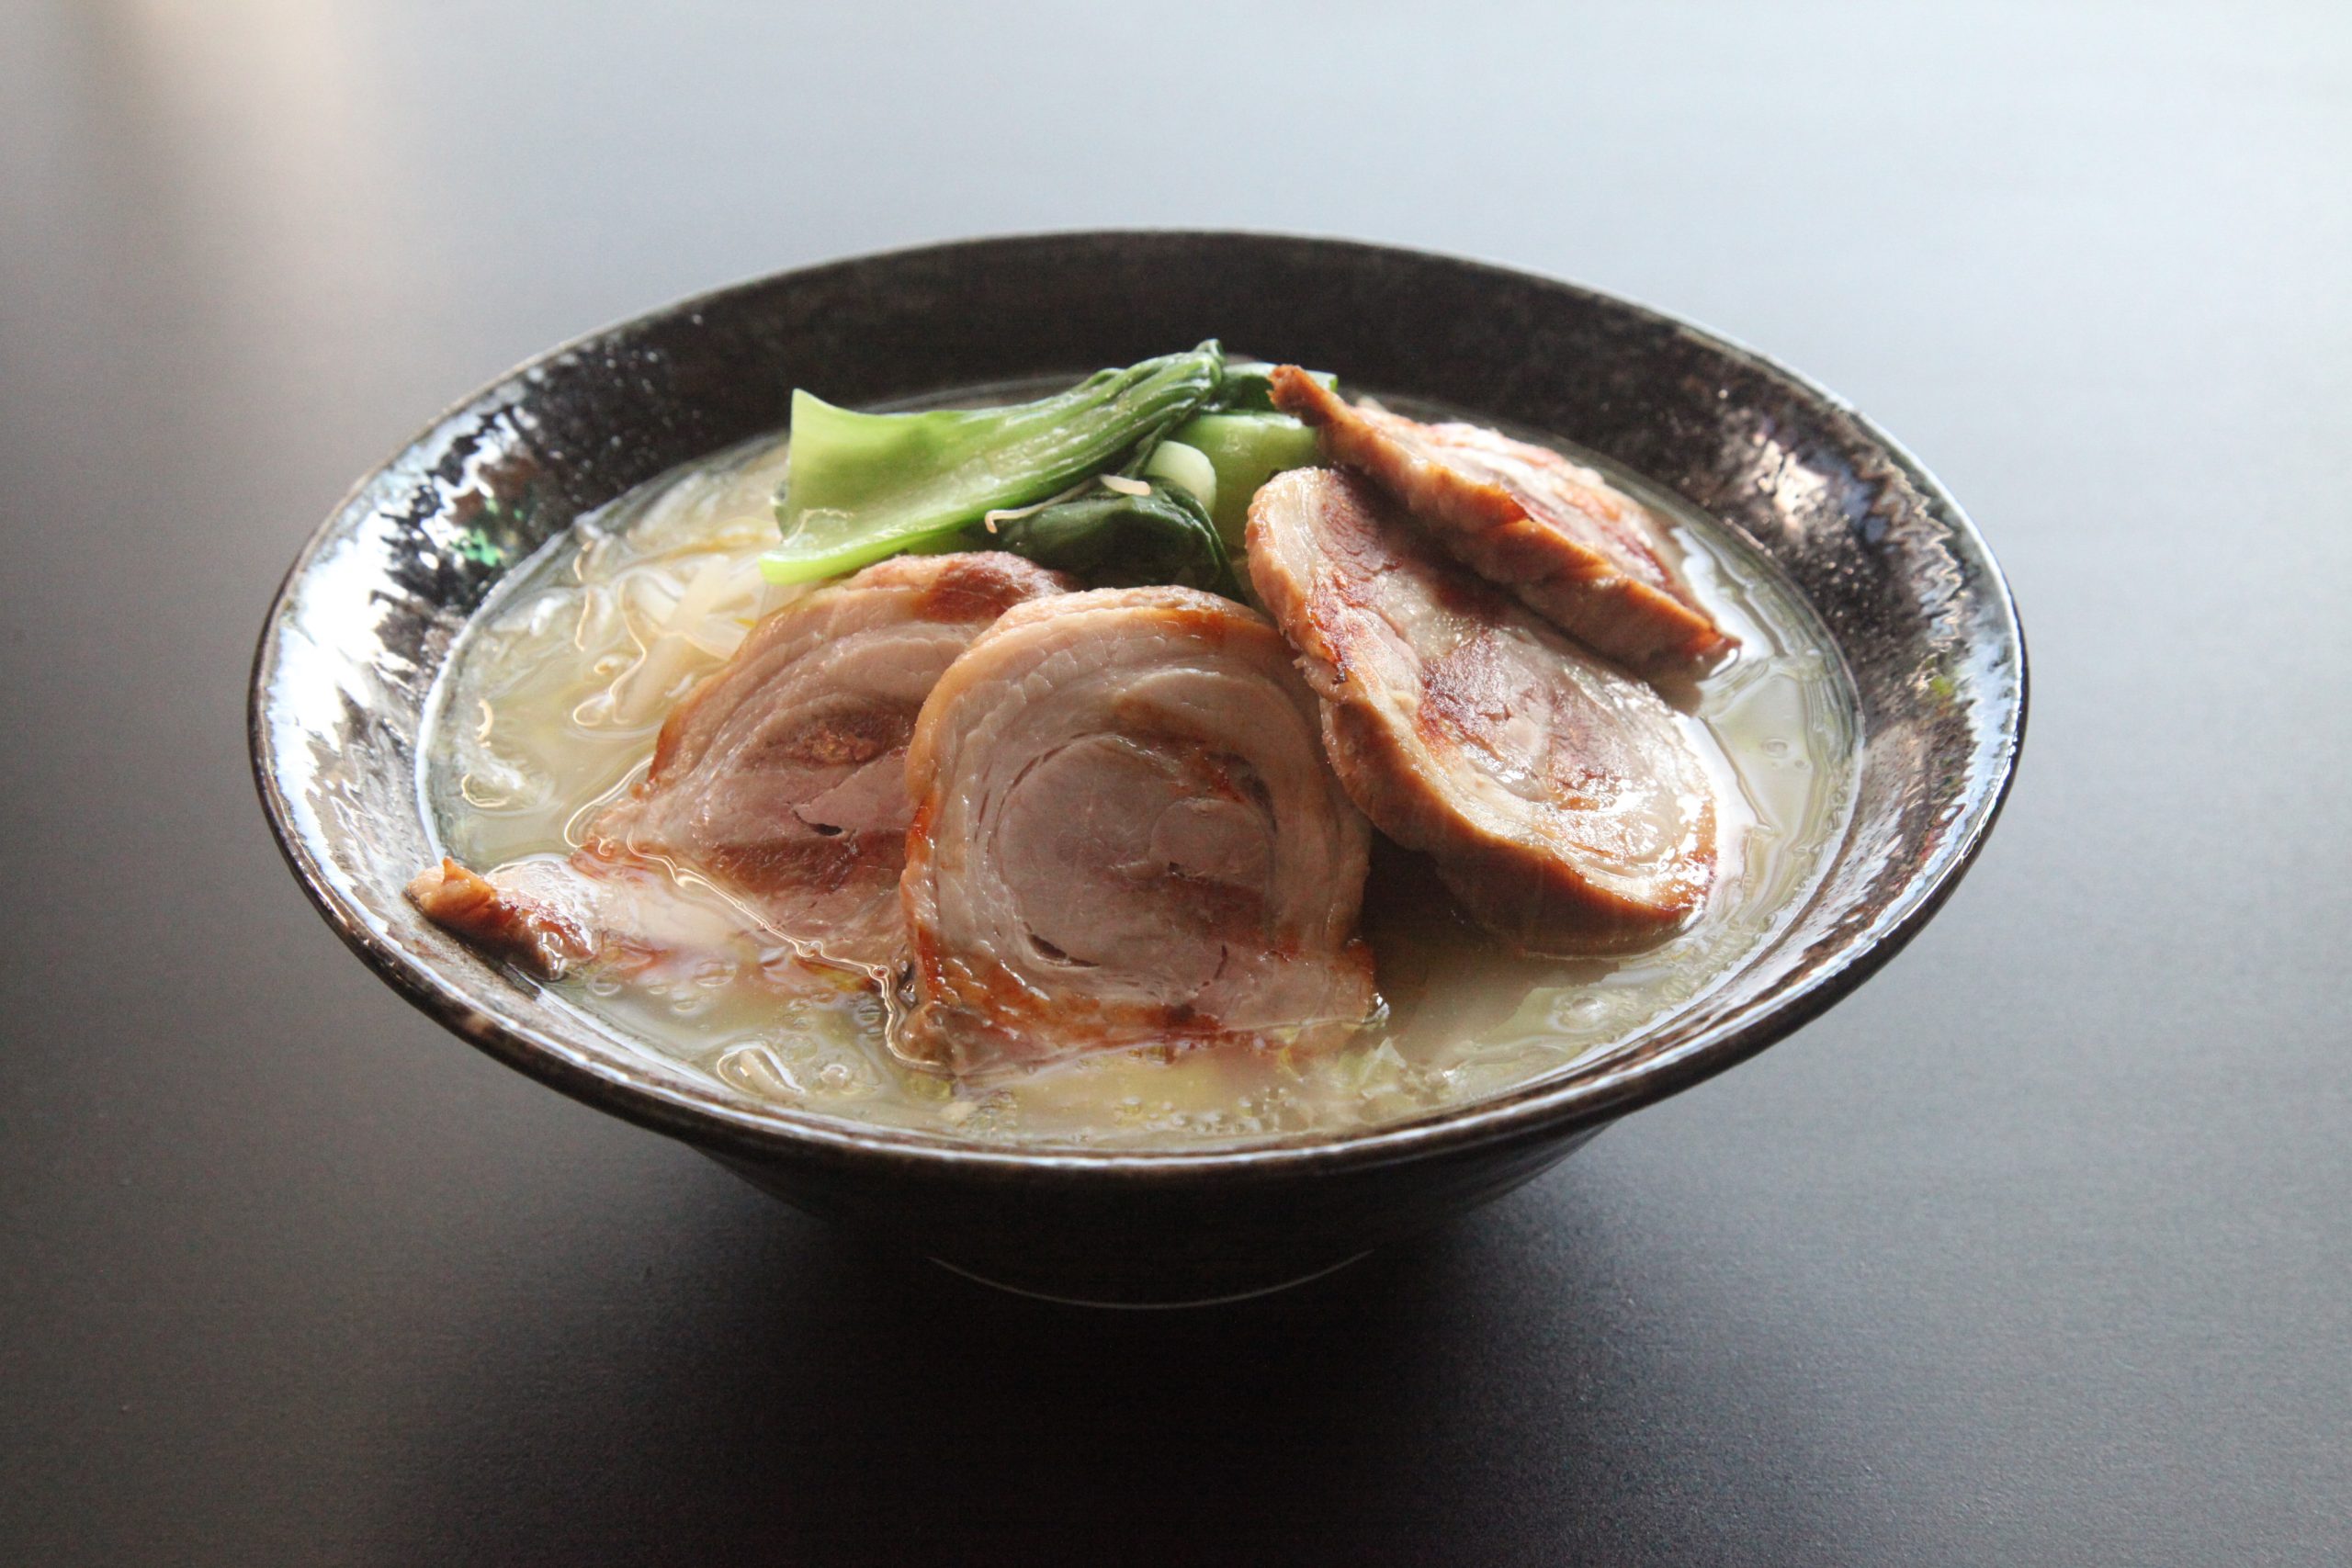 TAMASHII – Best Japanese Ramen Restaurant in NYC – Satisfy your 